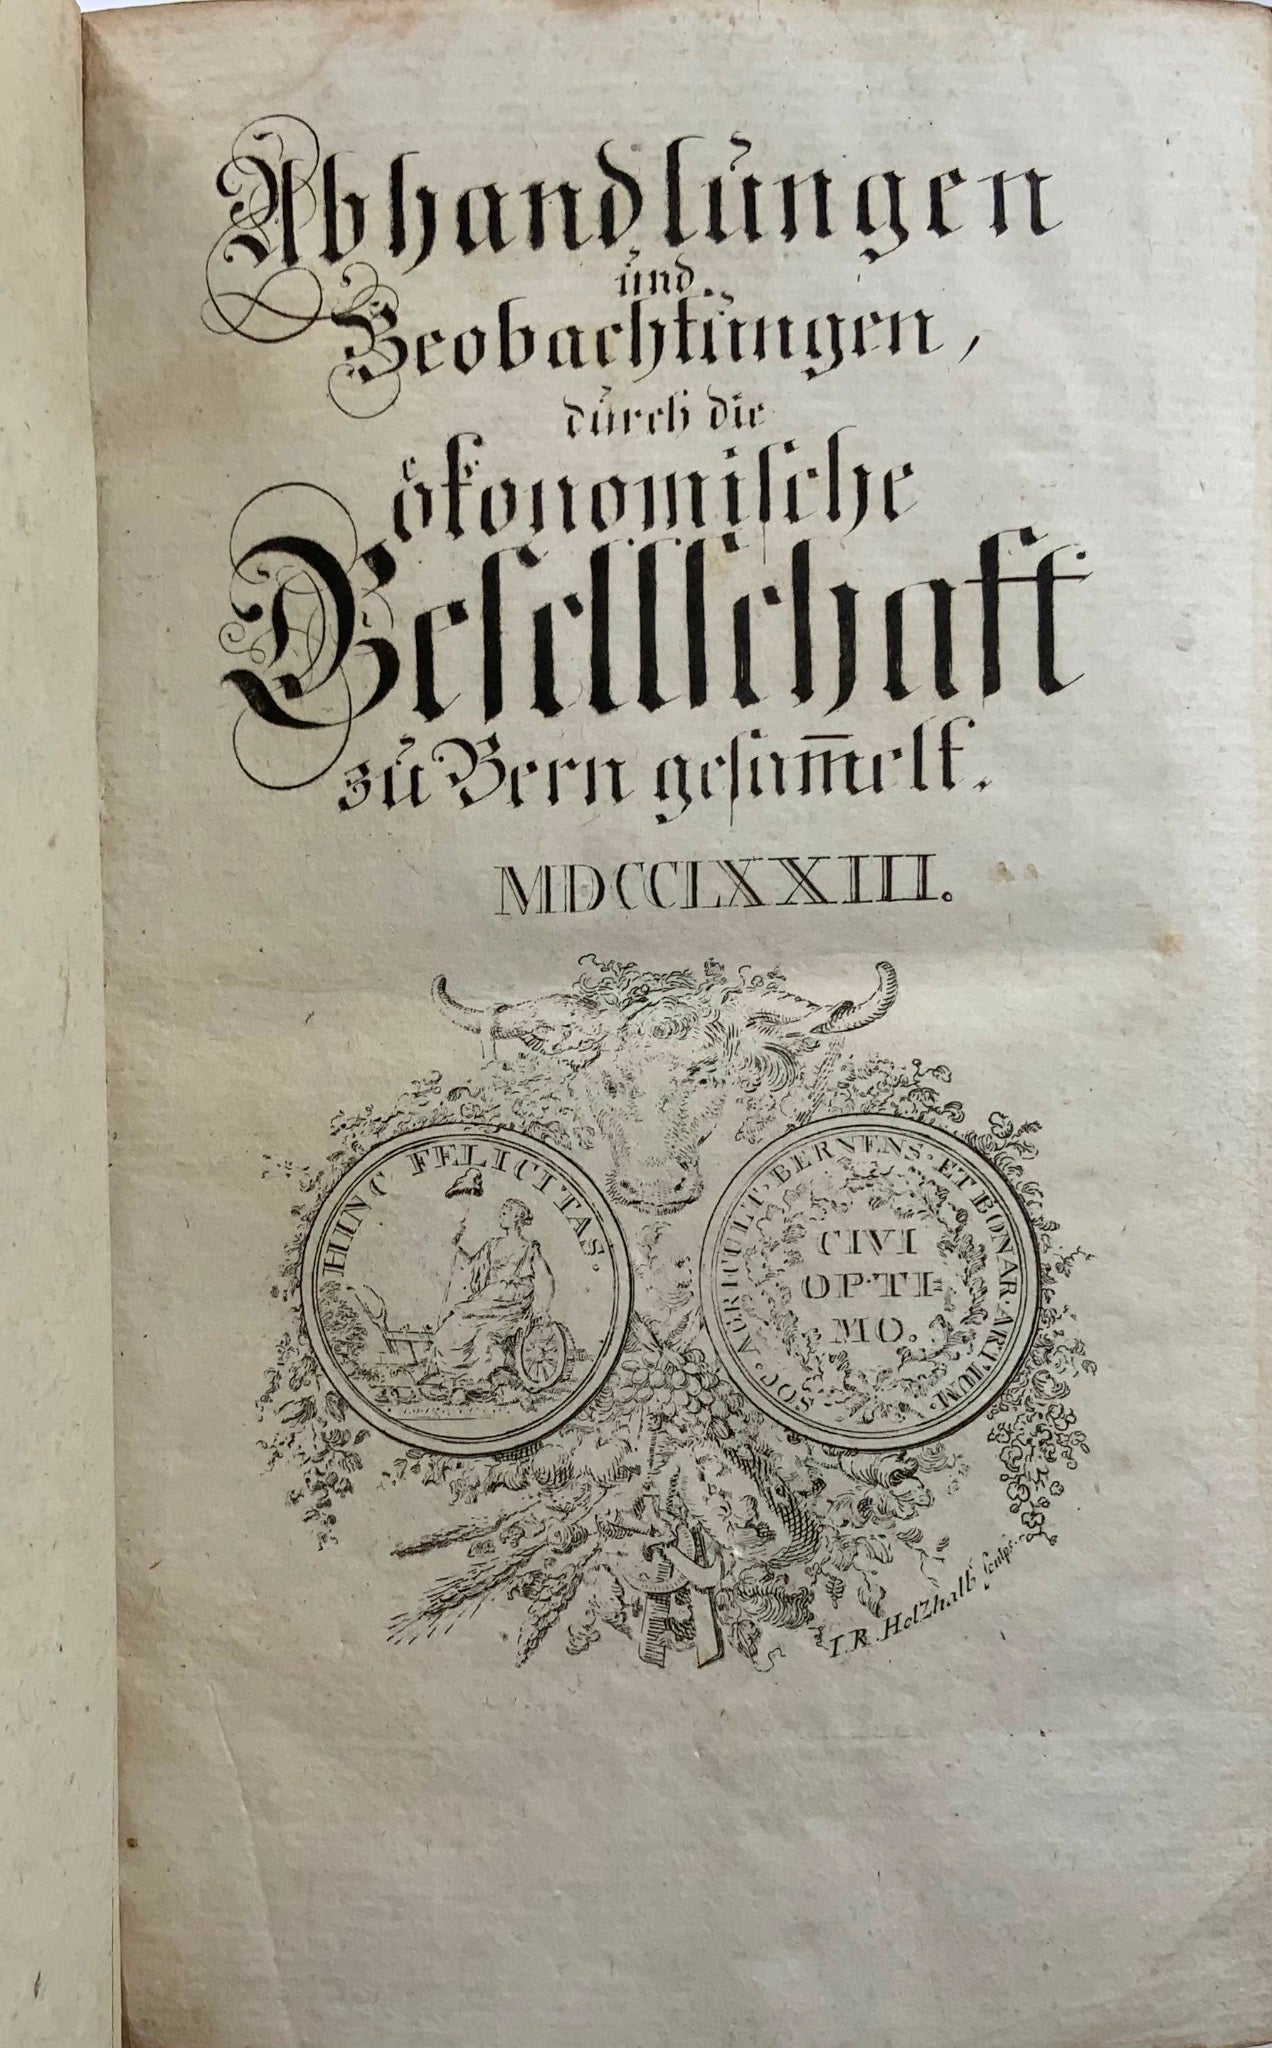 1760-73 Ensemble complet, Société économique de Berne, Suisse, richement illustré